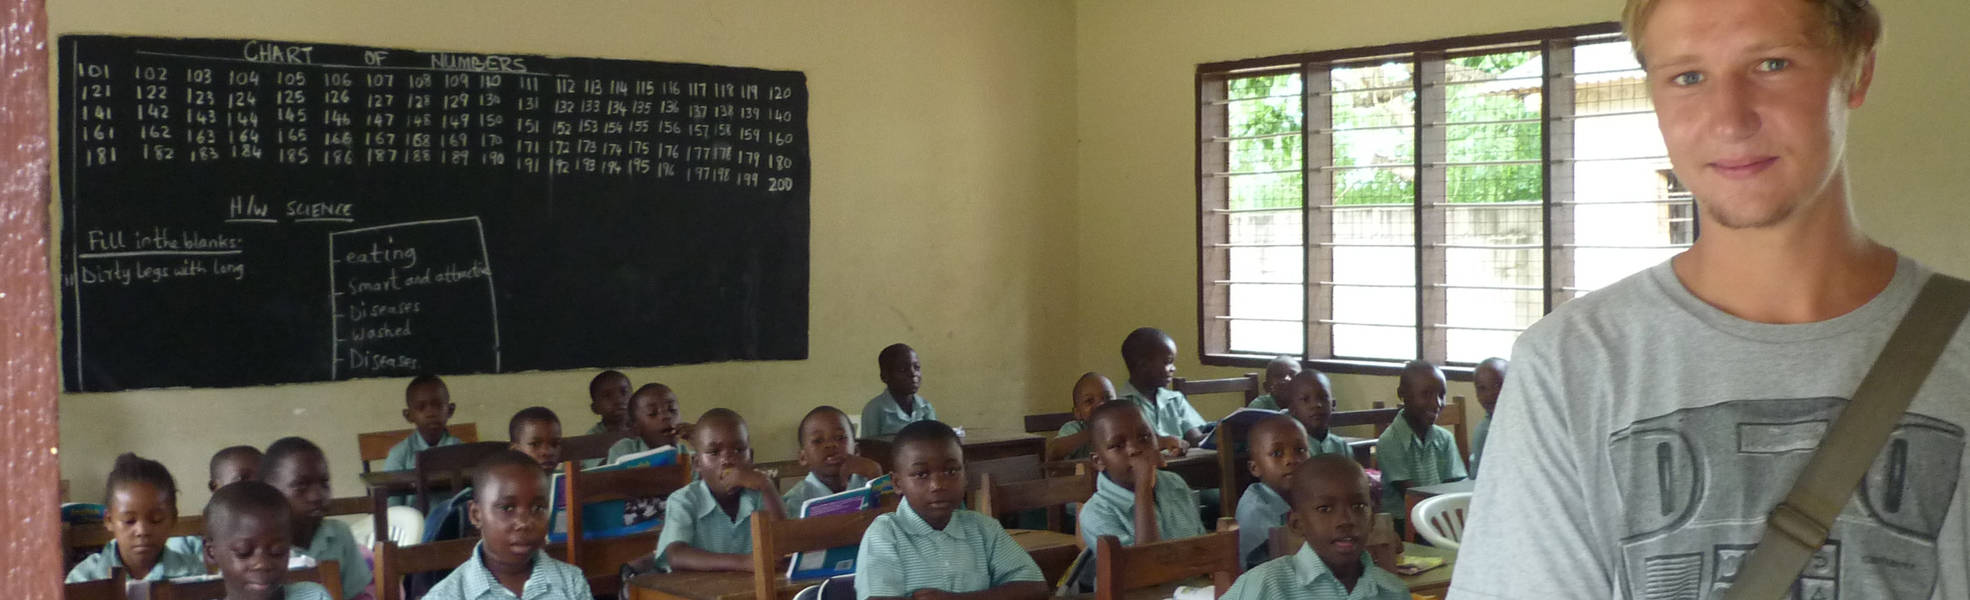 Freiwilligenarbeit an einer Grundschule in Tansania